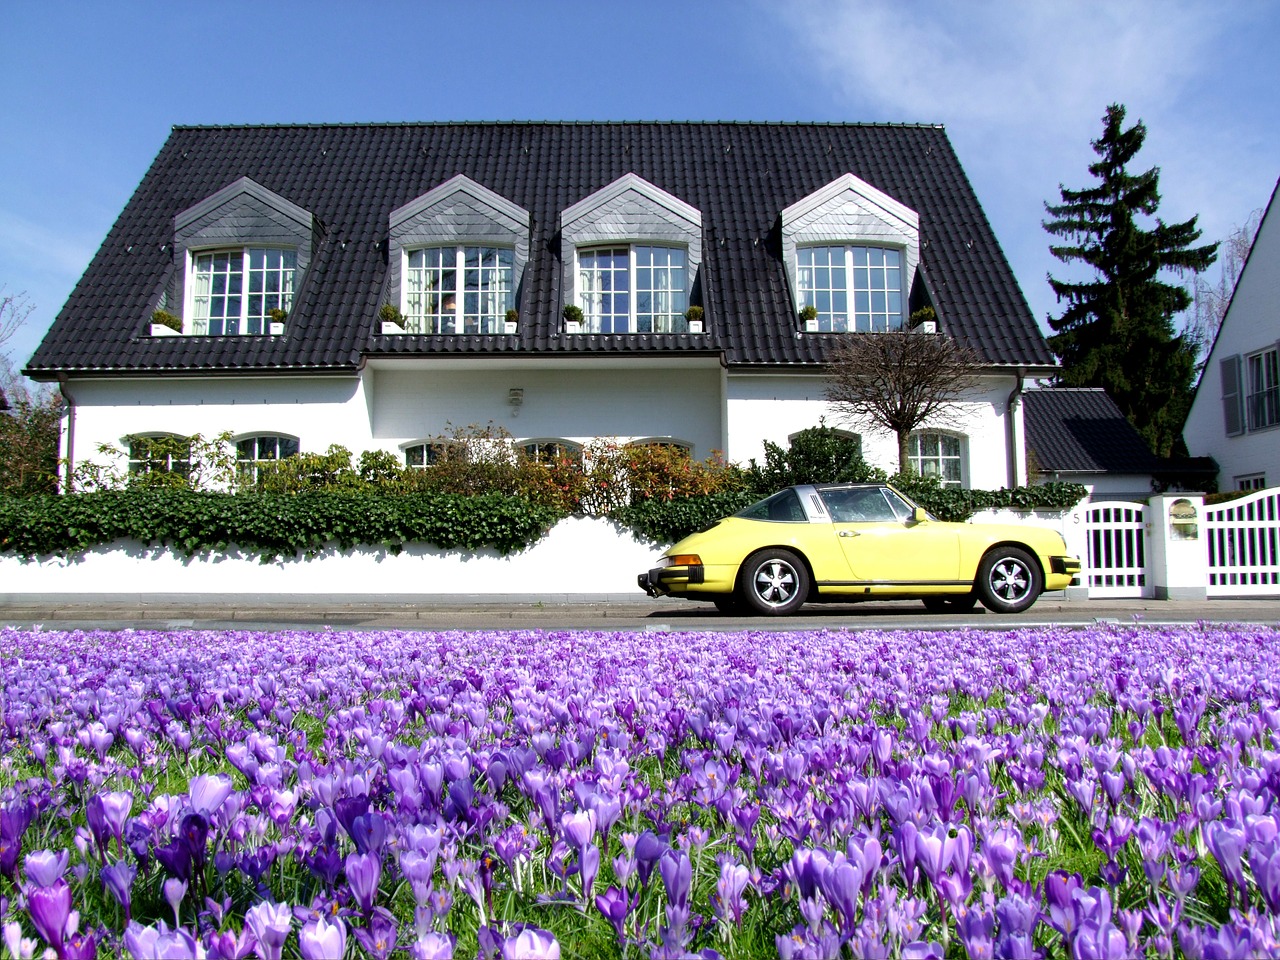 champ de fleurs violettes devant une grande maison